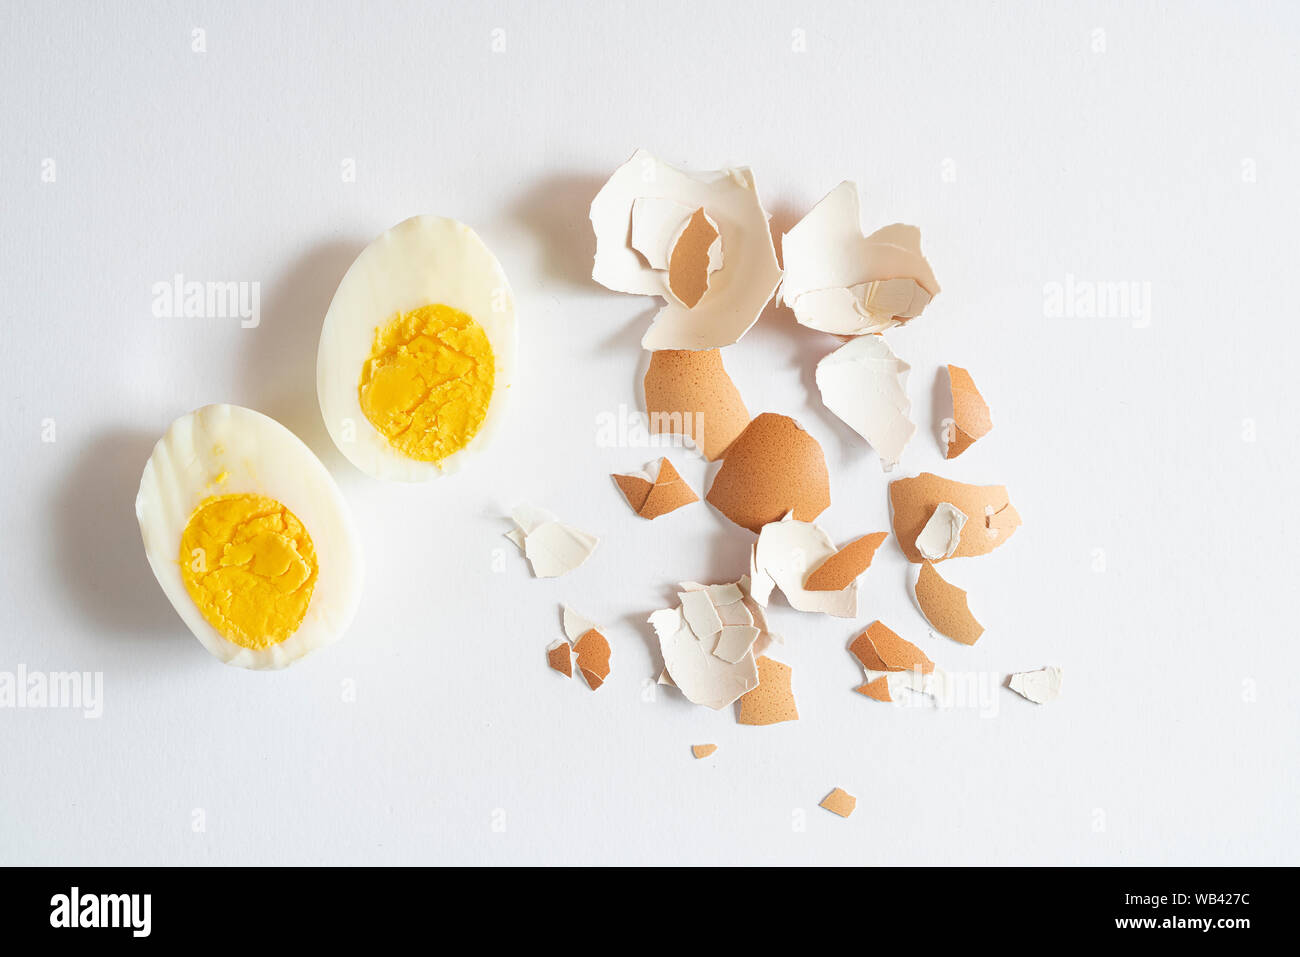 Un œuf dur bombardé sur une surface blanche Banque D'Images